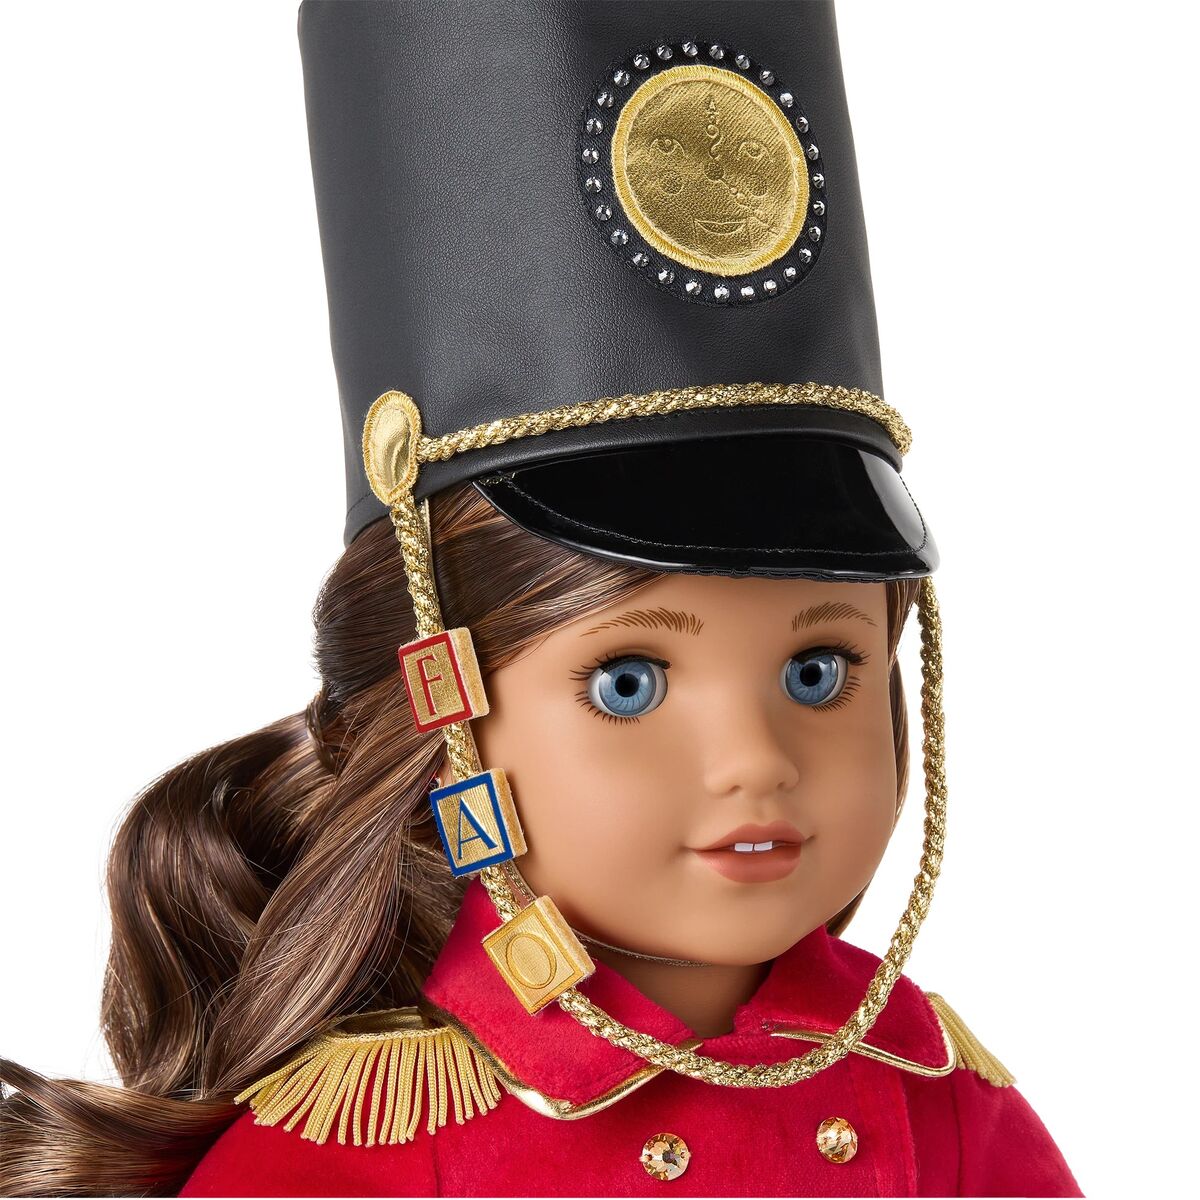 現品販売 Fao Schwarz Tess Doll 18inch ドール 人形 フィギュア